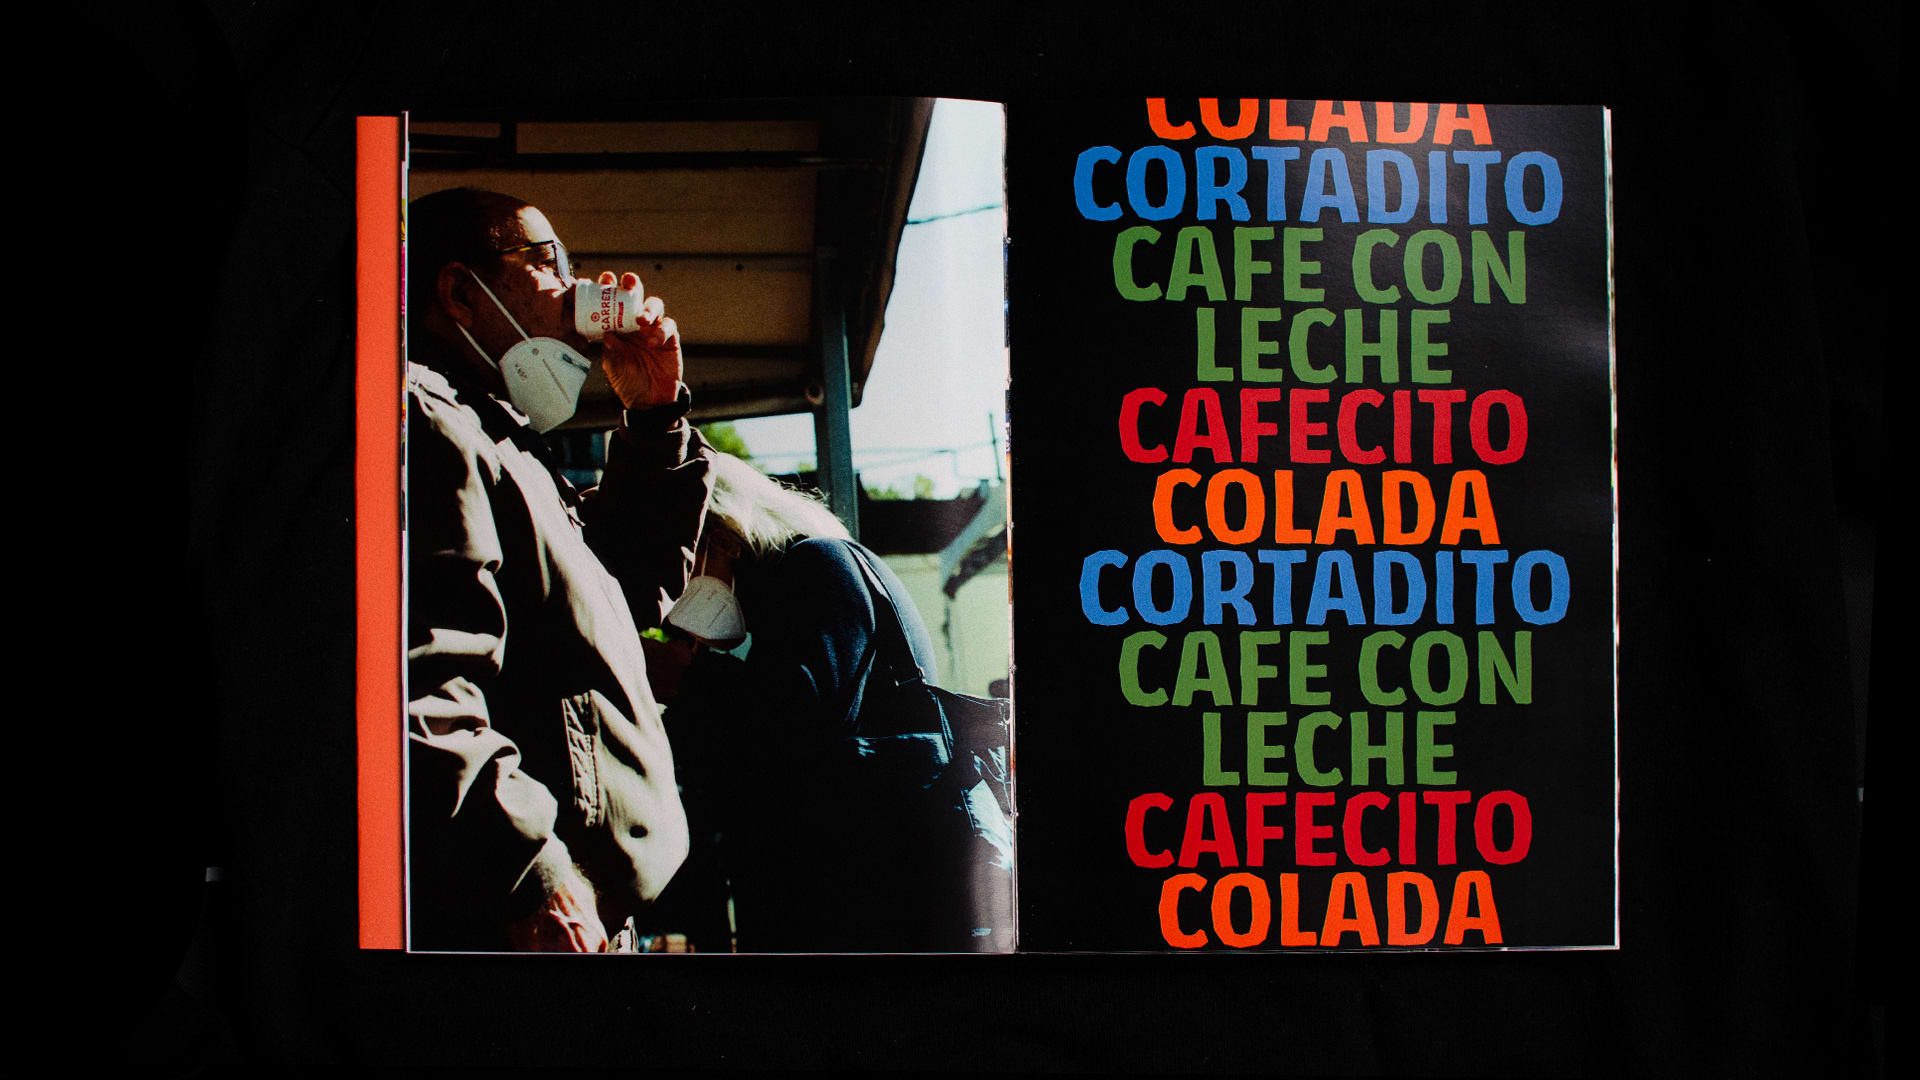 Ventanitas: A Window into Miami’s Coffee Culture, media item 6